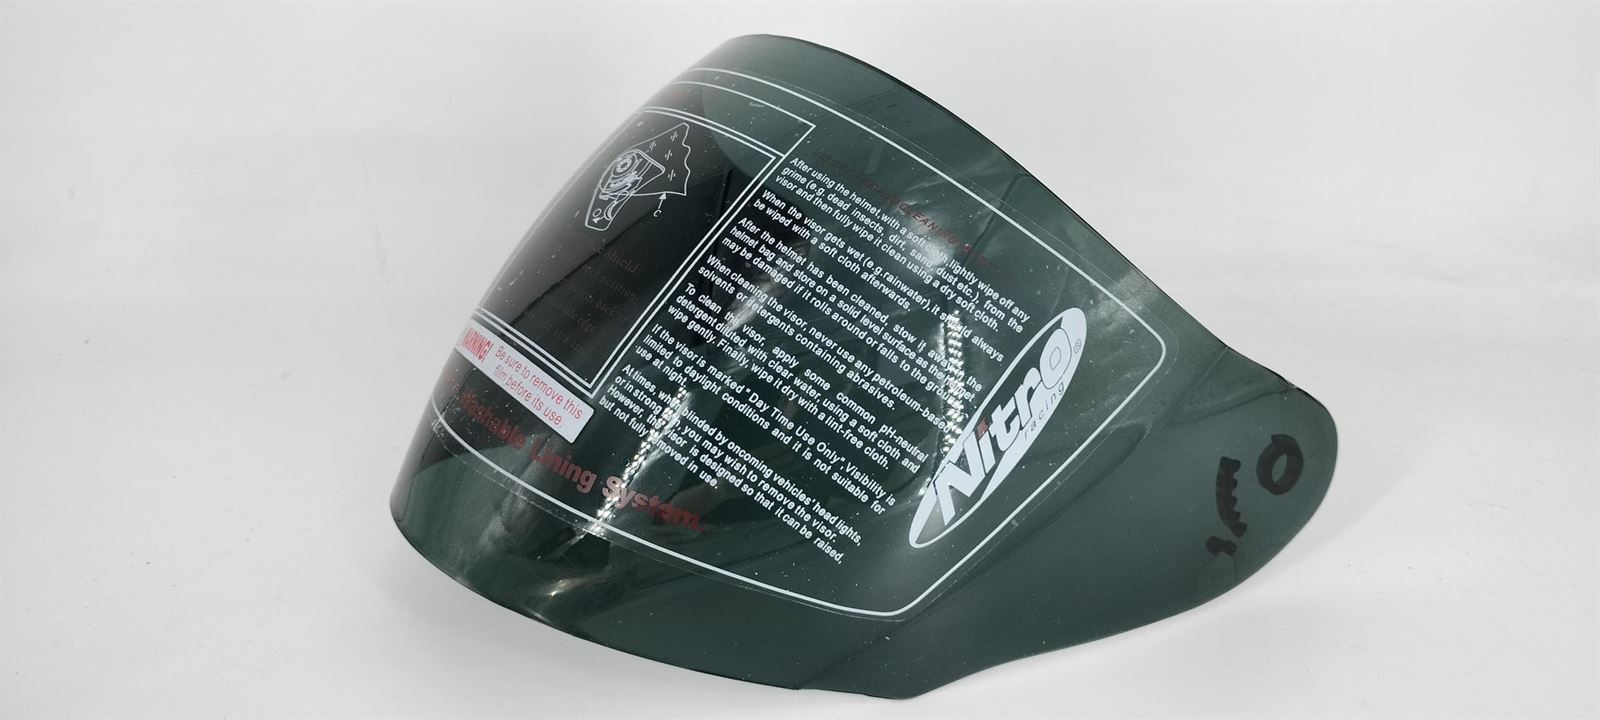 Pantalla casco integral Nitro X509-V ahumada - Imagen 1